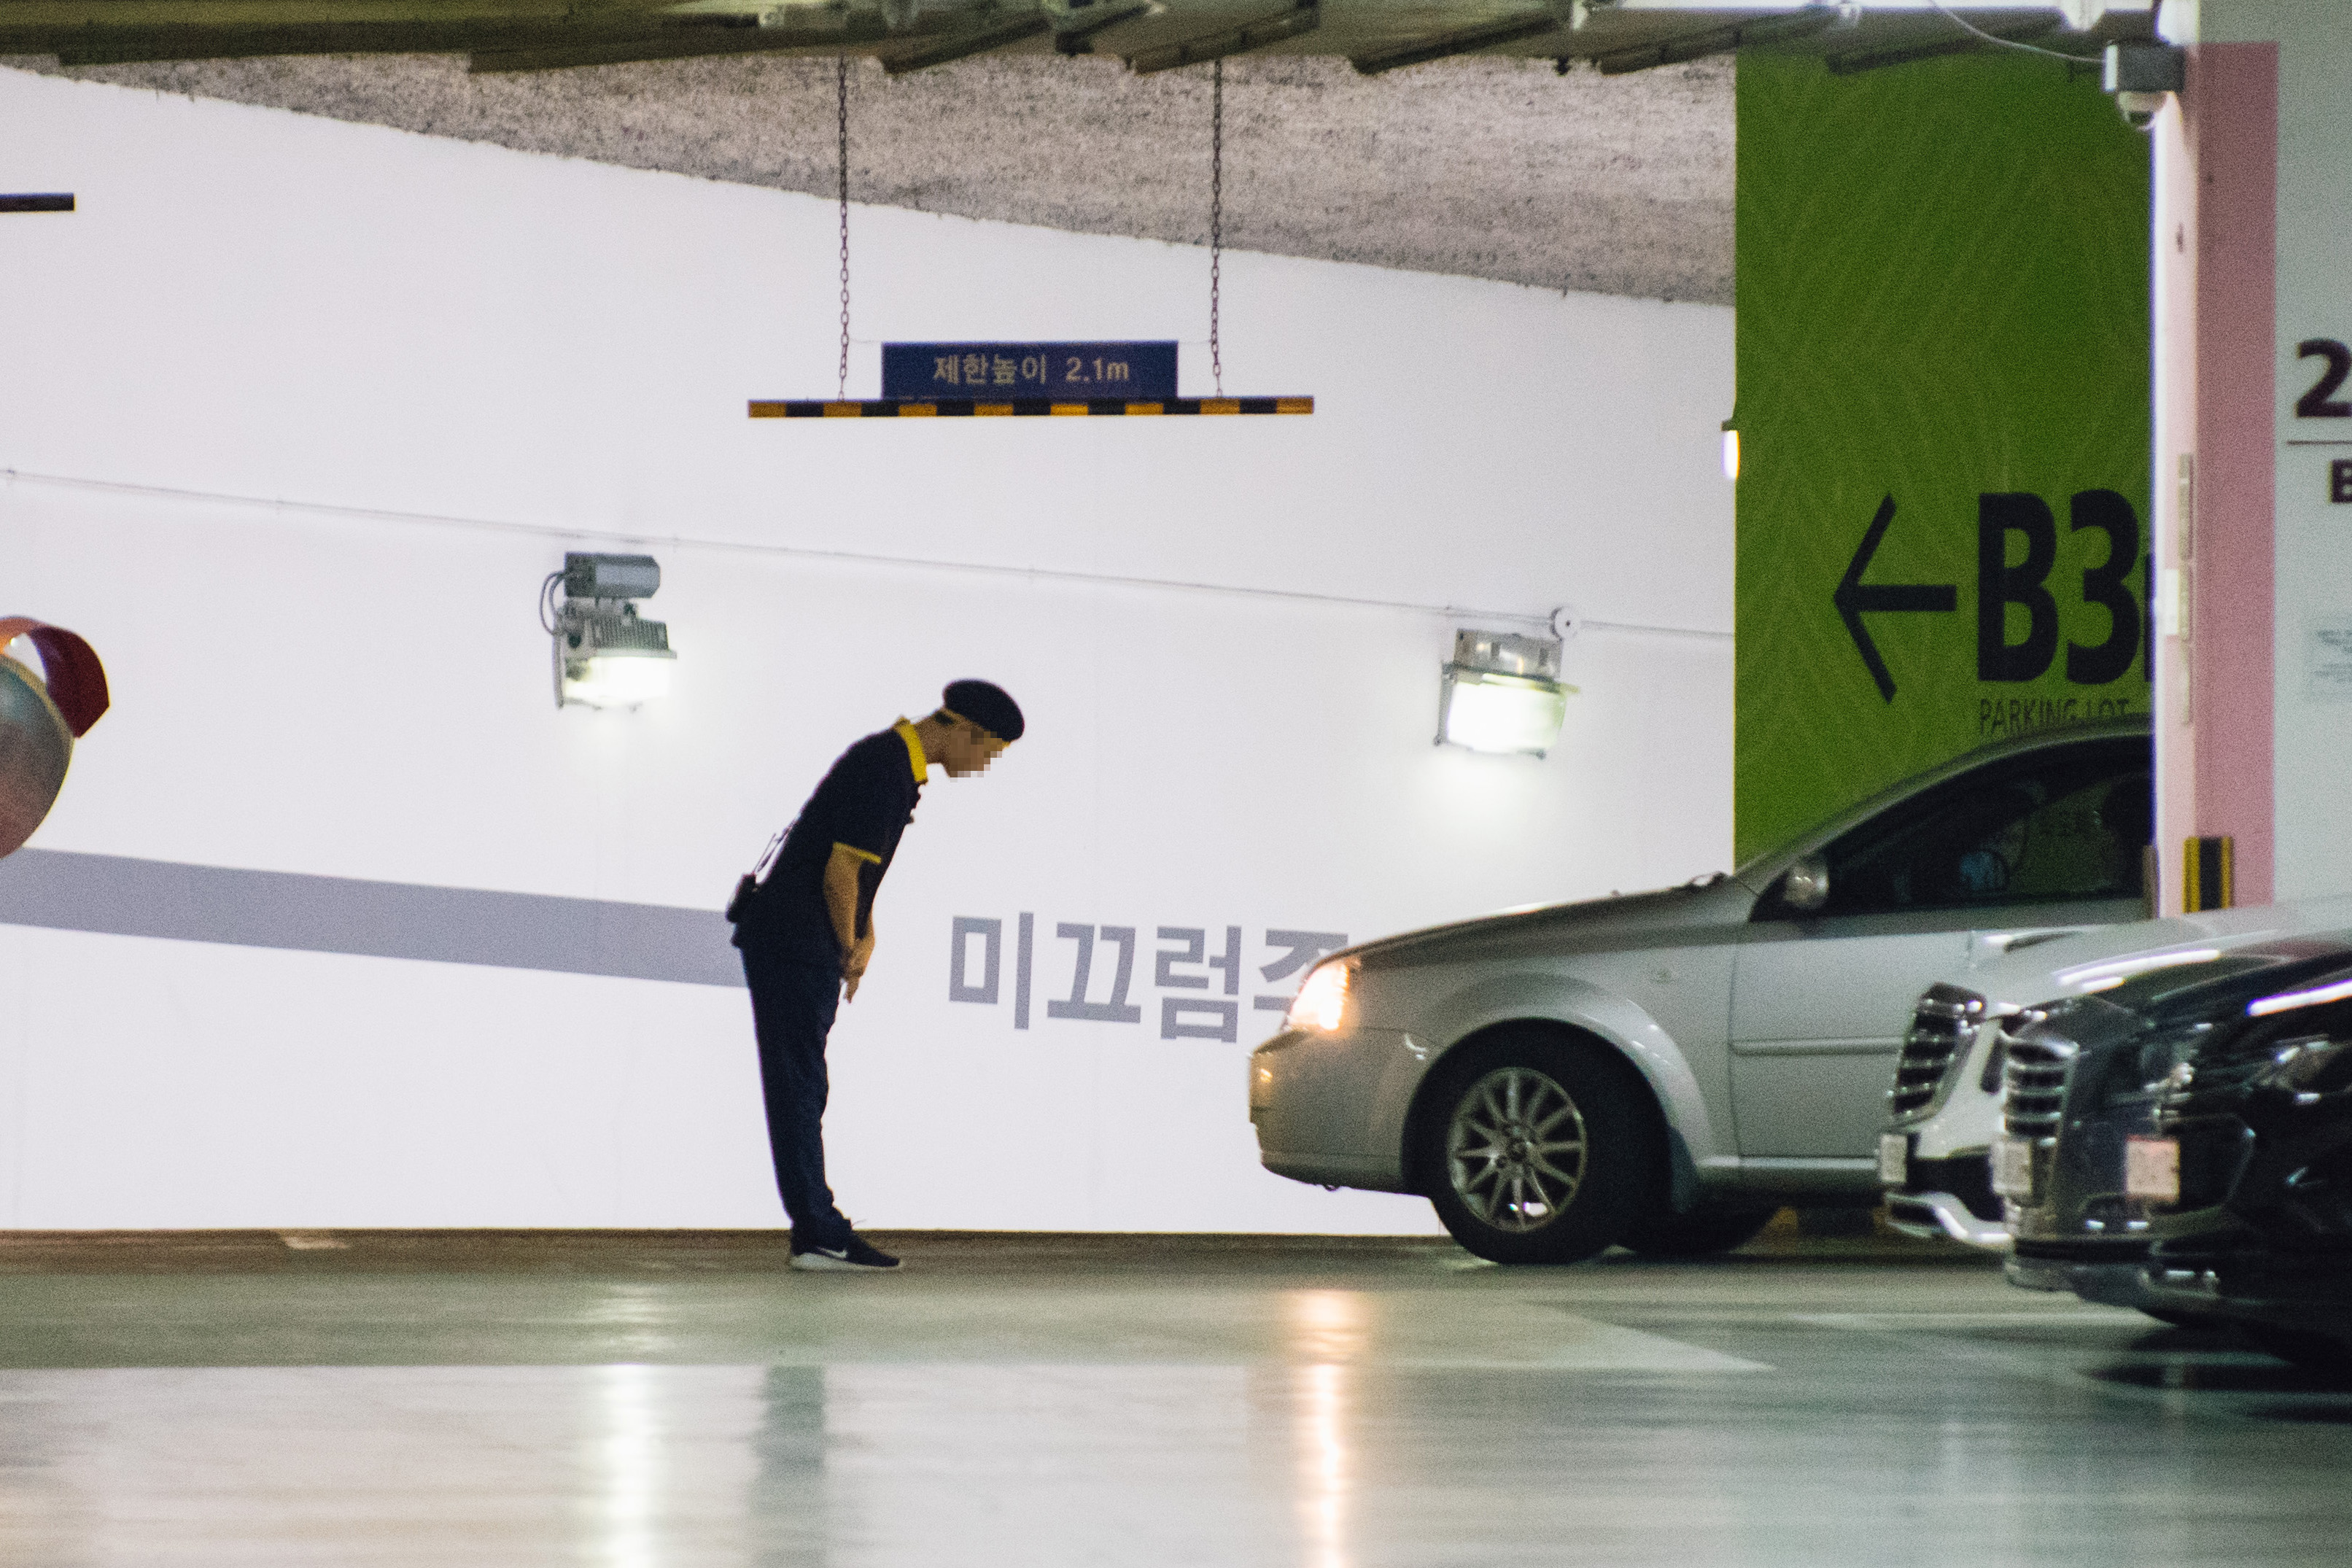  지난 2일 오후 서울 시내의 한 백화점 지하주차장에서 주차관리 노동자가 출차중인 고객에게 인사를 하고 있다. 폭염속에 노동자들은 끊임없이 오가는 차량이 내뿜는 열기와 매연에 시달렸다. 류재민 기자 phoem@seoul.co.kr 